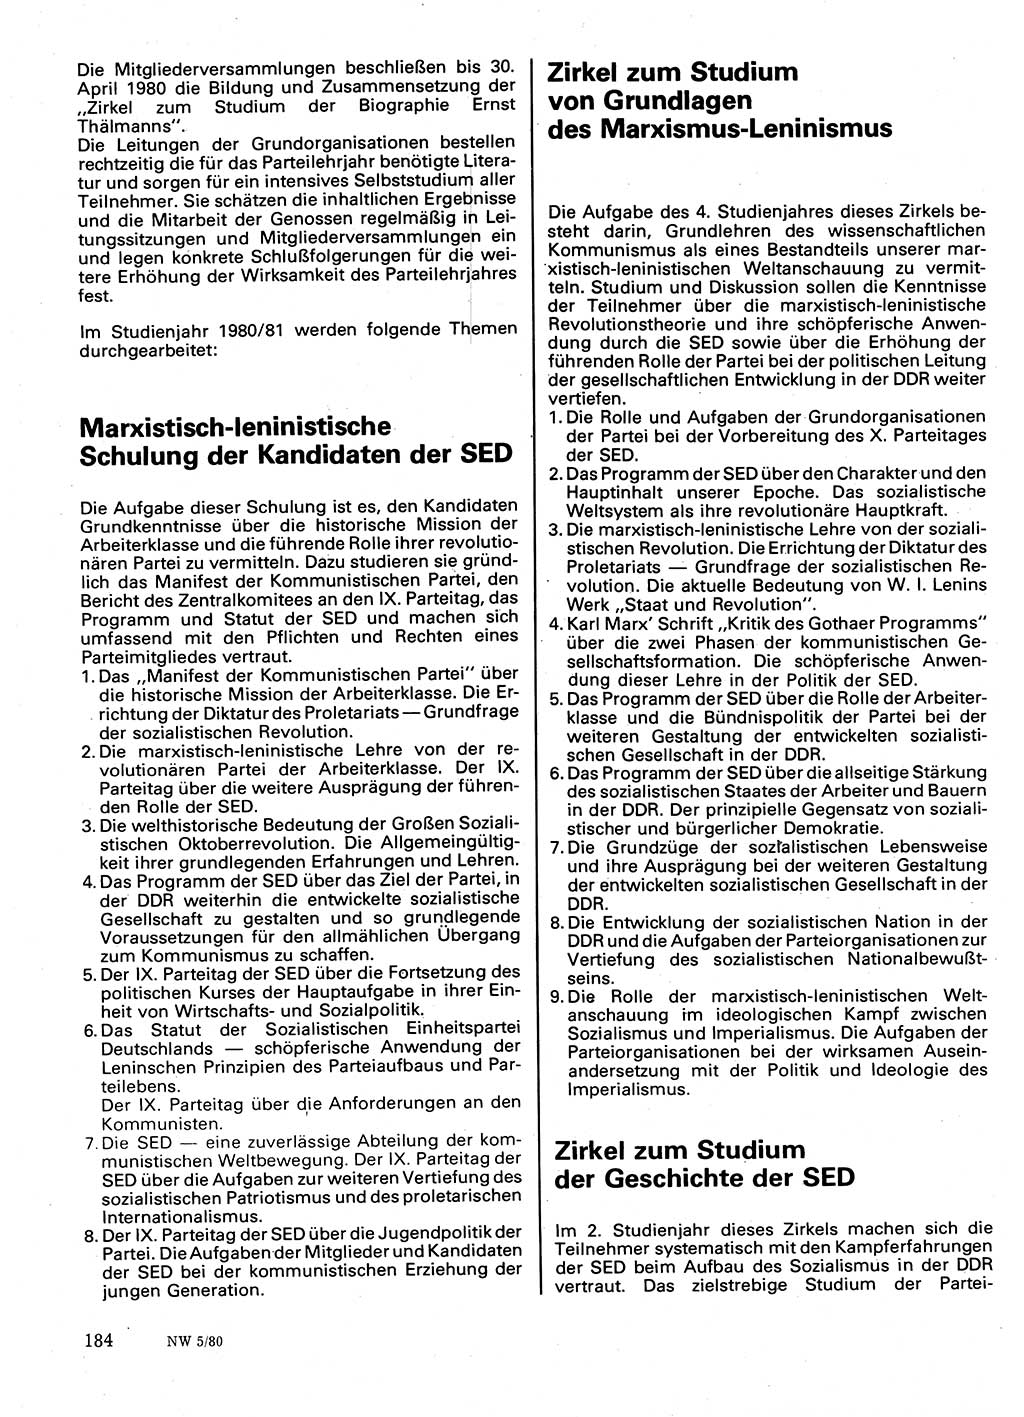 Neuer Weg (NW), Organ des Zentralkomitees (ZK) der SED (Sozialistische Einheitspartei Deutschlands) für Fragen des Parteilebens, 35. Jahrgang [Deutsche Demokratische Republik (DDR)] 1980, Seite 184 (NW ZK SED DDR 1980, S. 184)